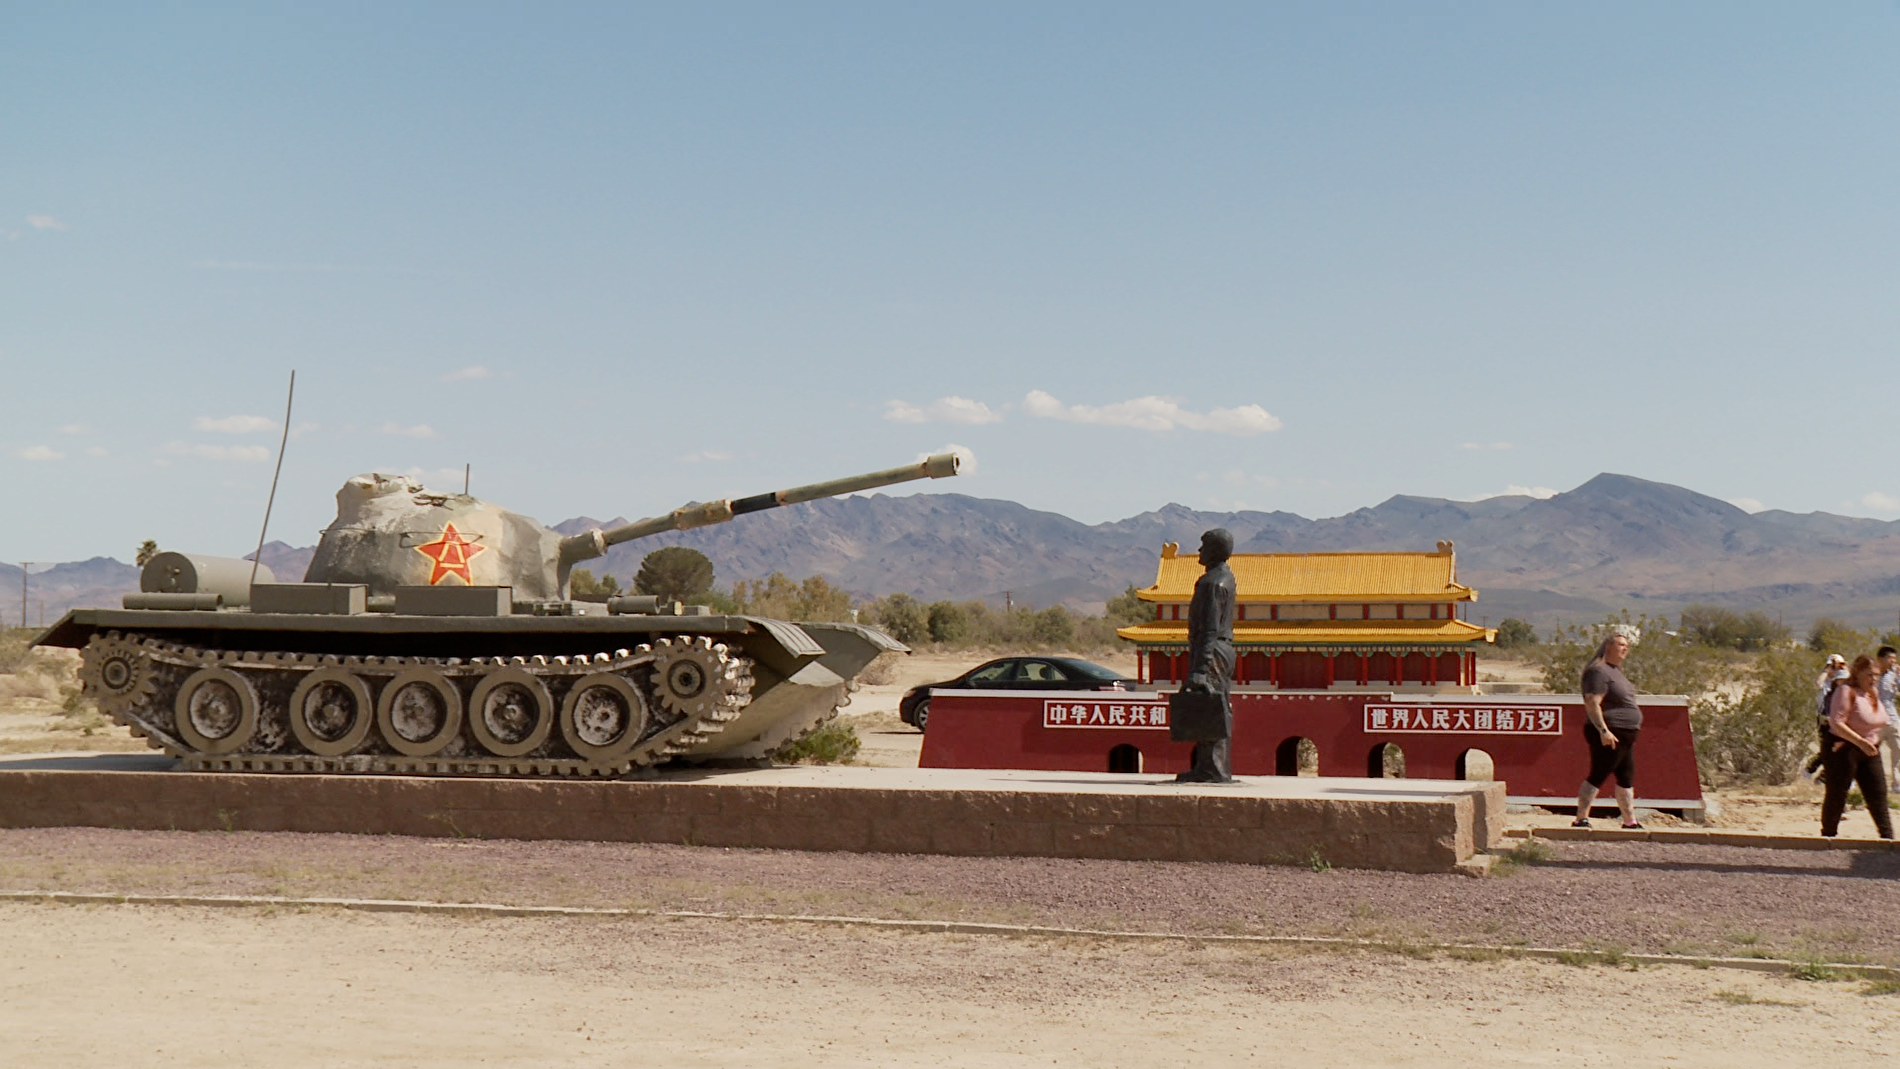 六四前夕 南加州“坦克人”雕塑遭损毁